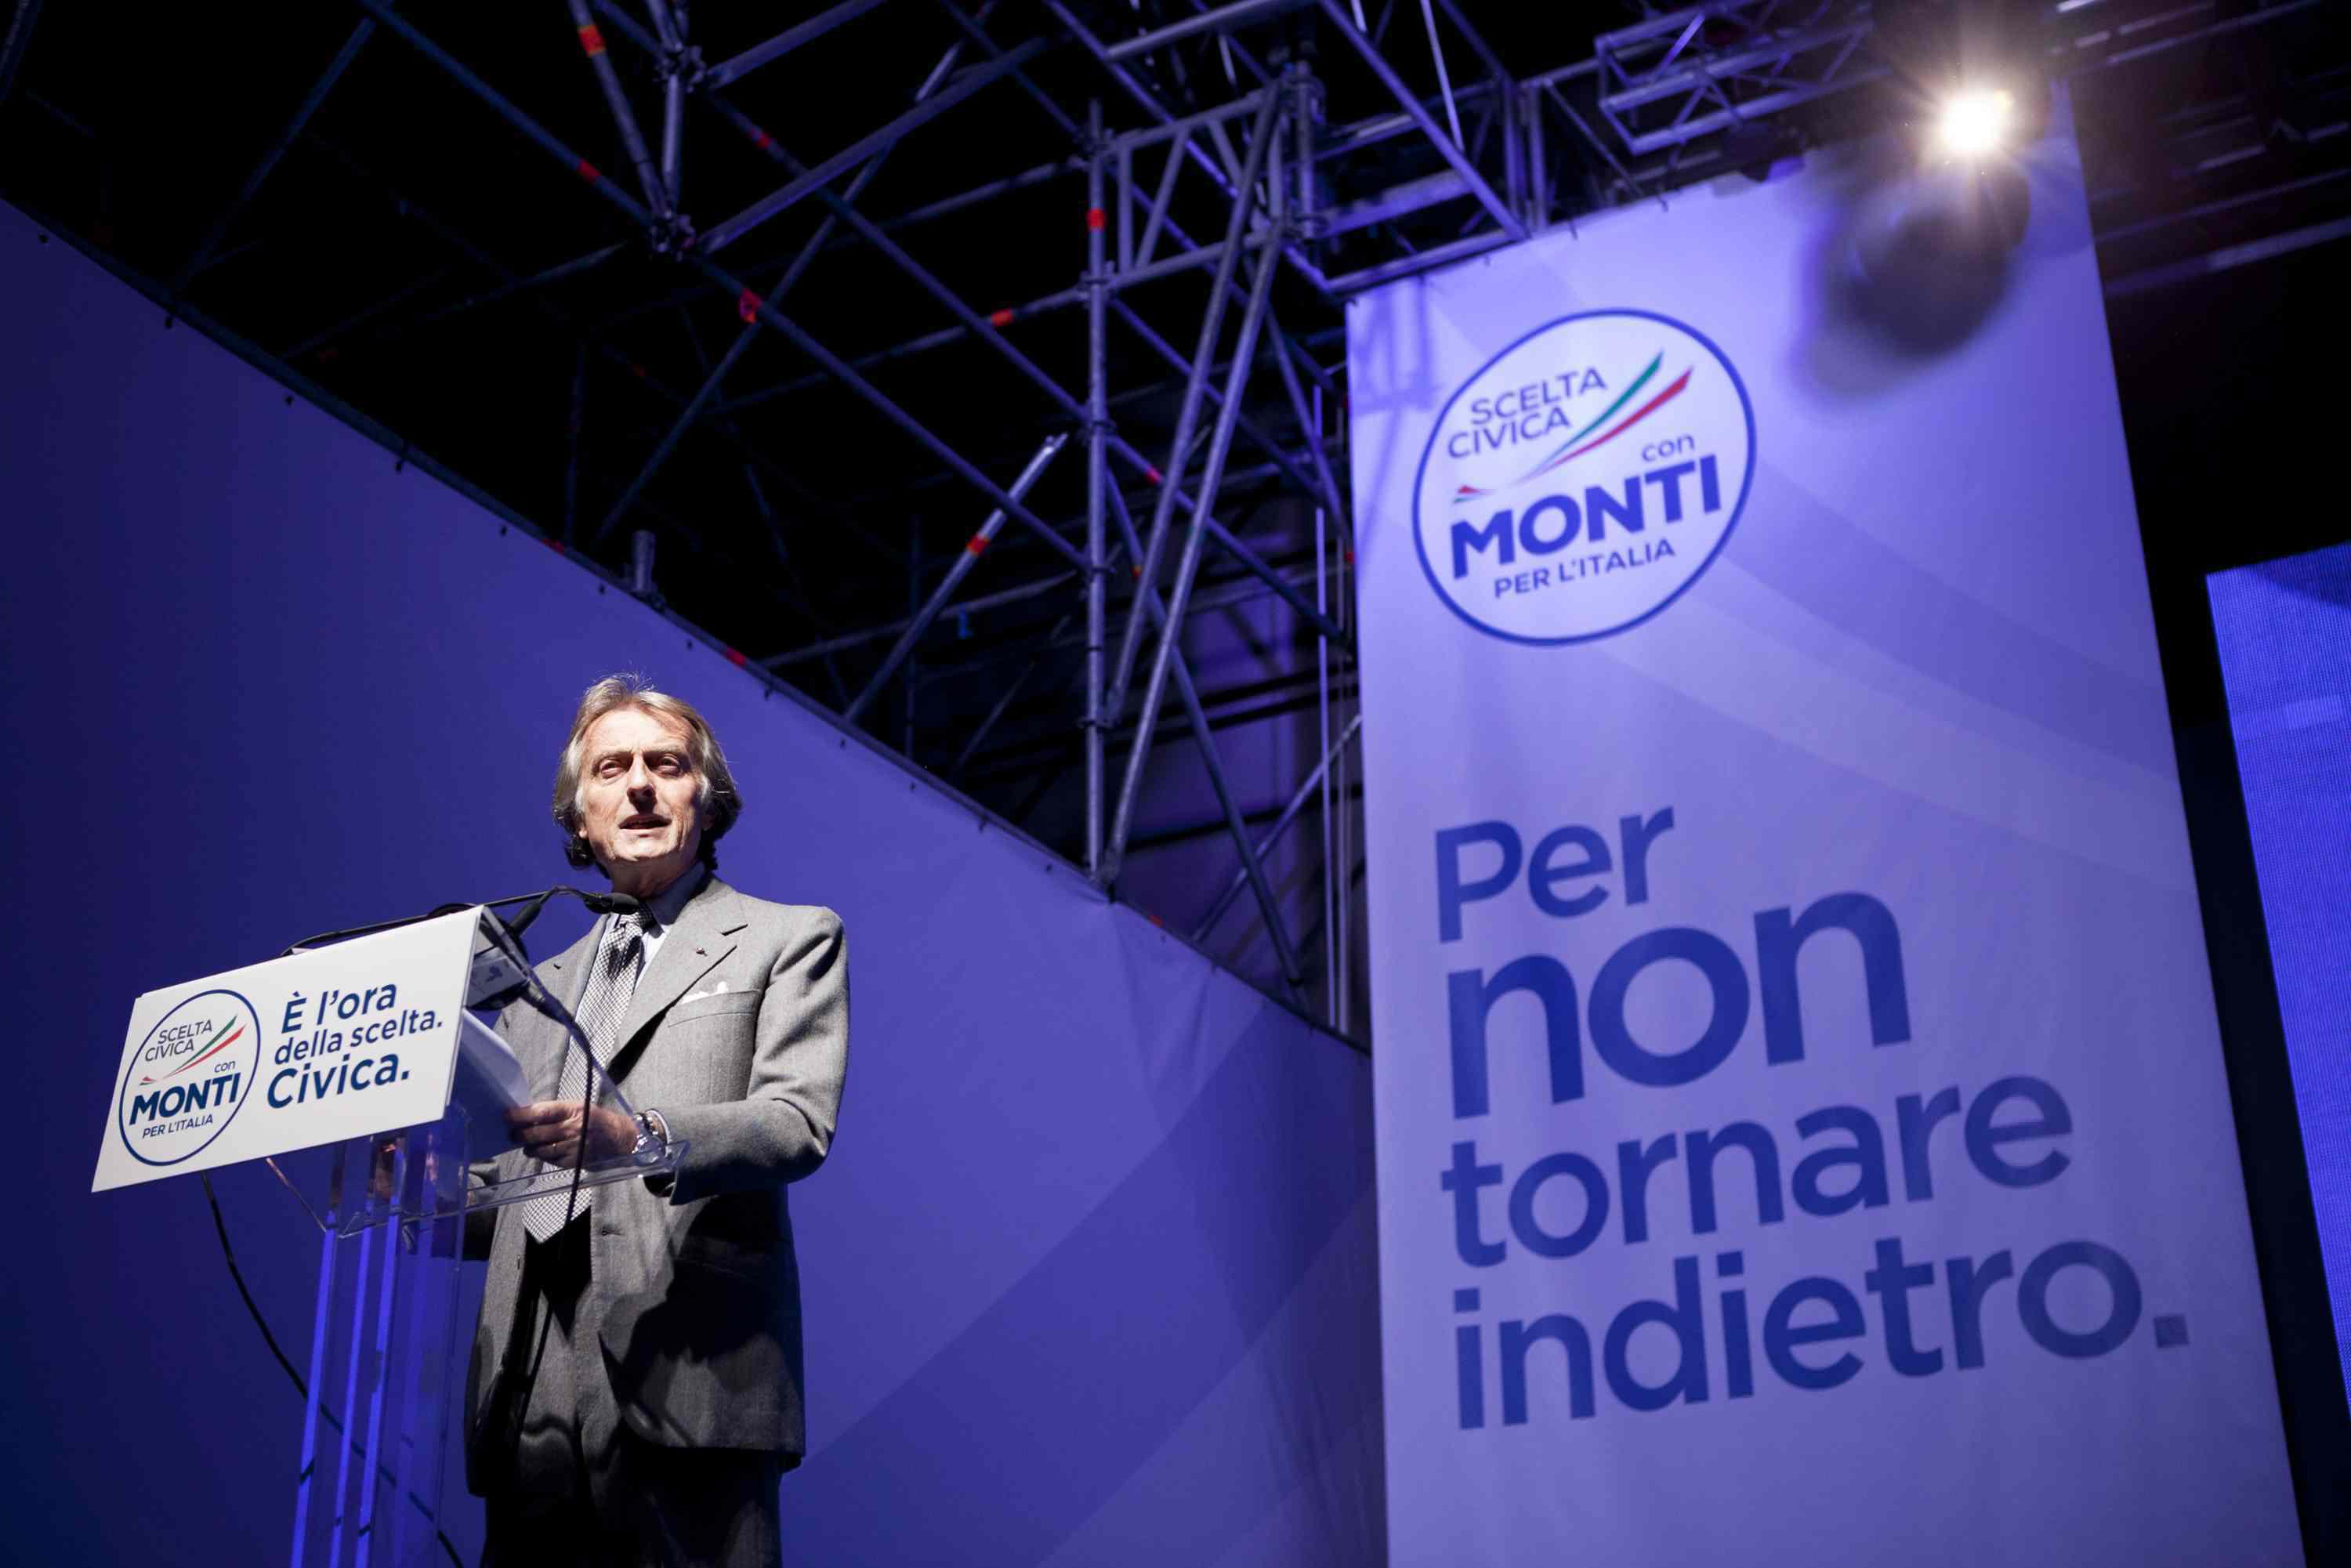 Scelta civica con Monti (Foto Infophoto)